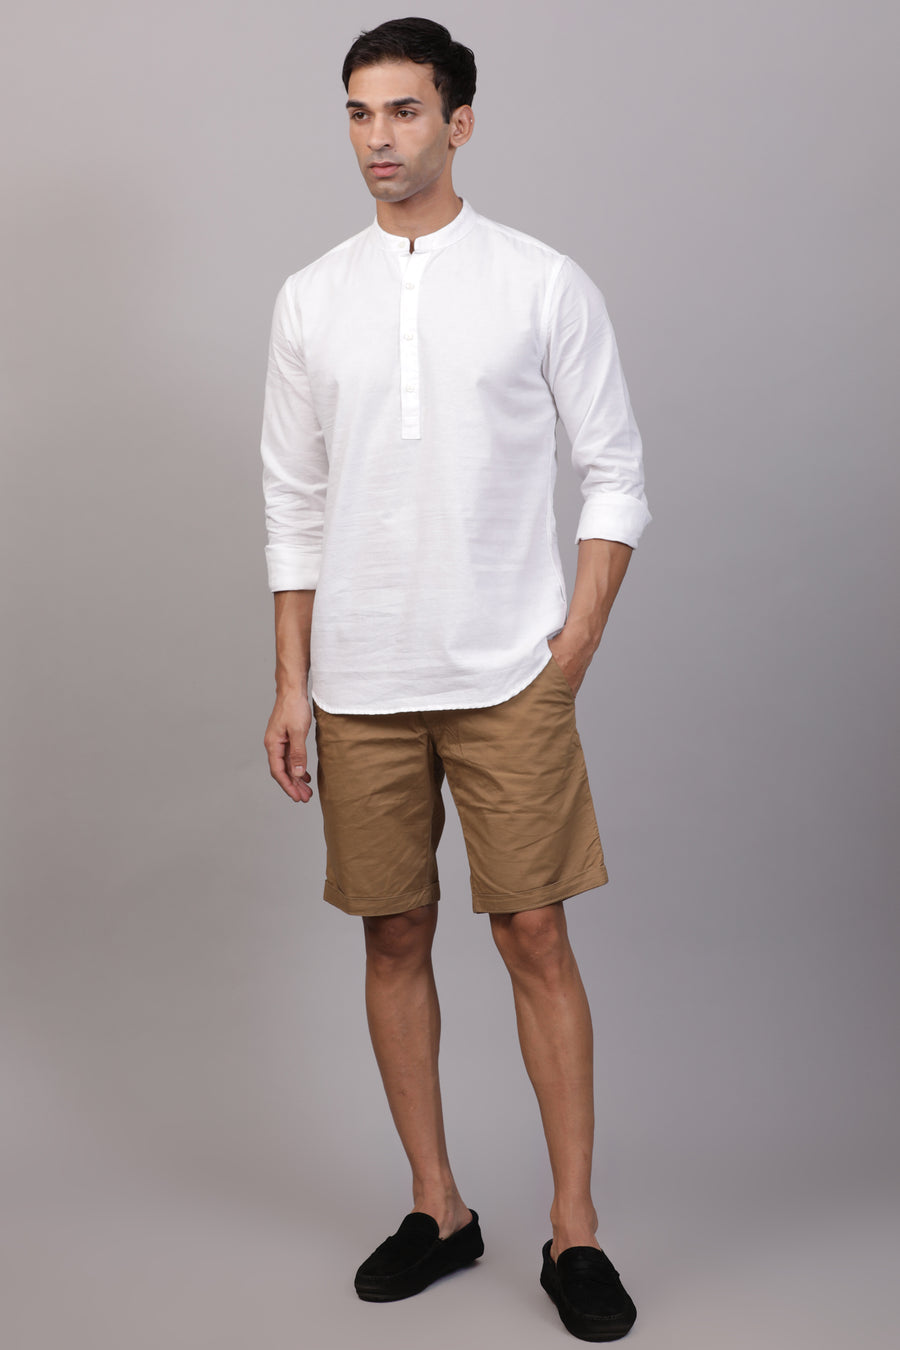 Dollar - Kurta Style Shirt - White